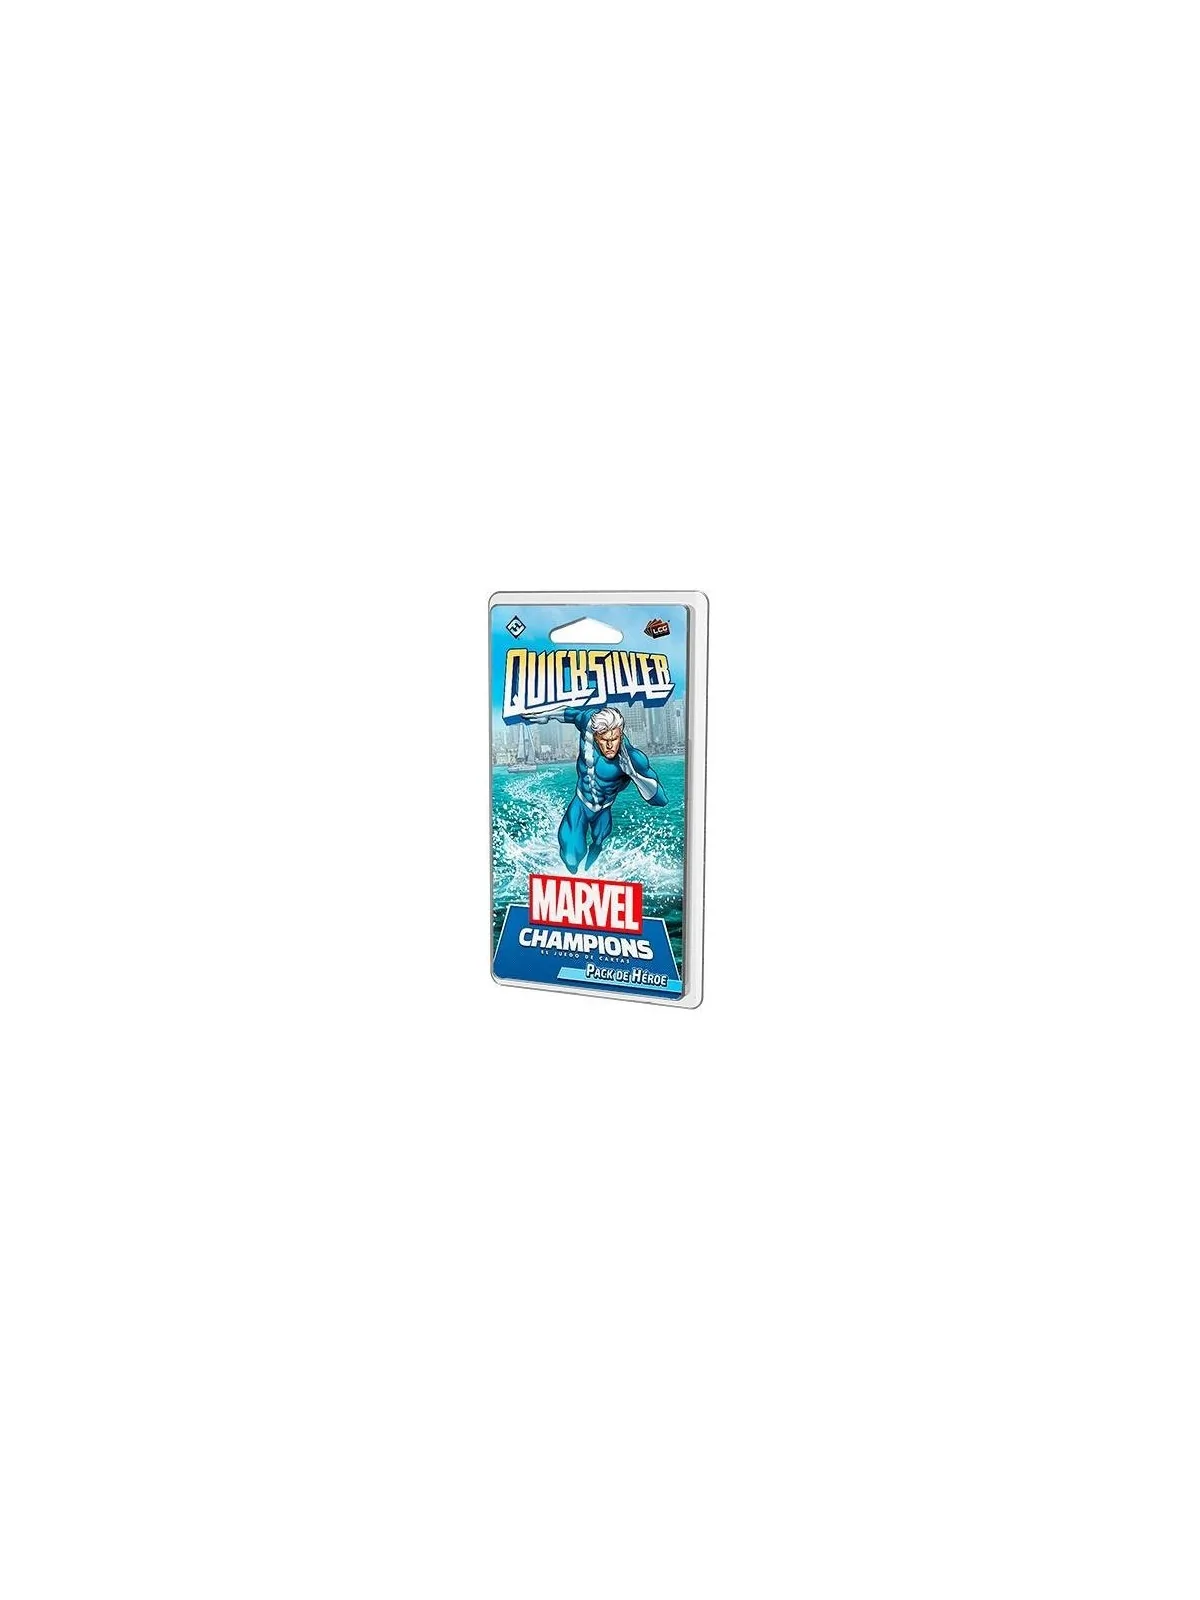 Comprar Marvel Champions: Quicksilver barato al mejor precio 15,29 € d